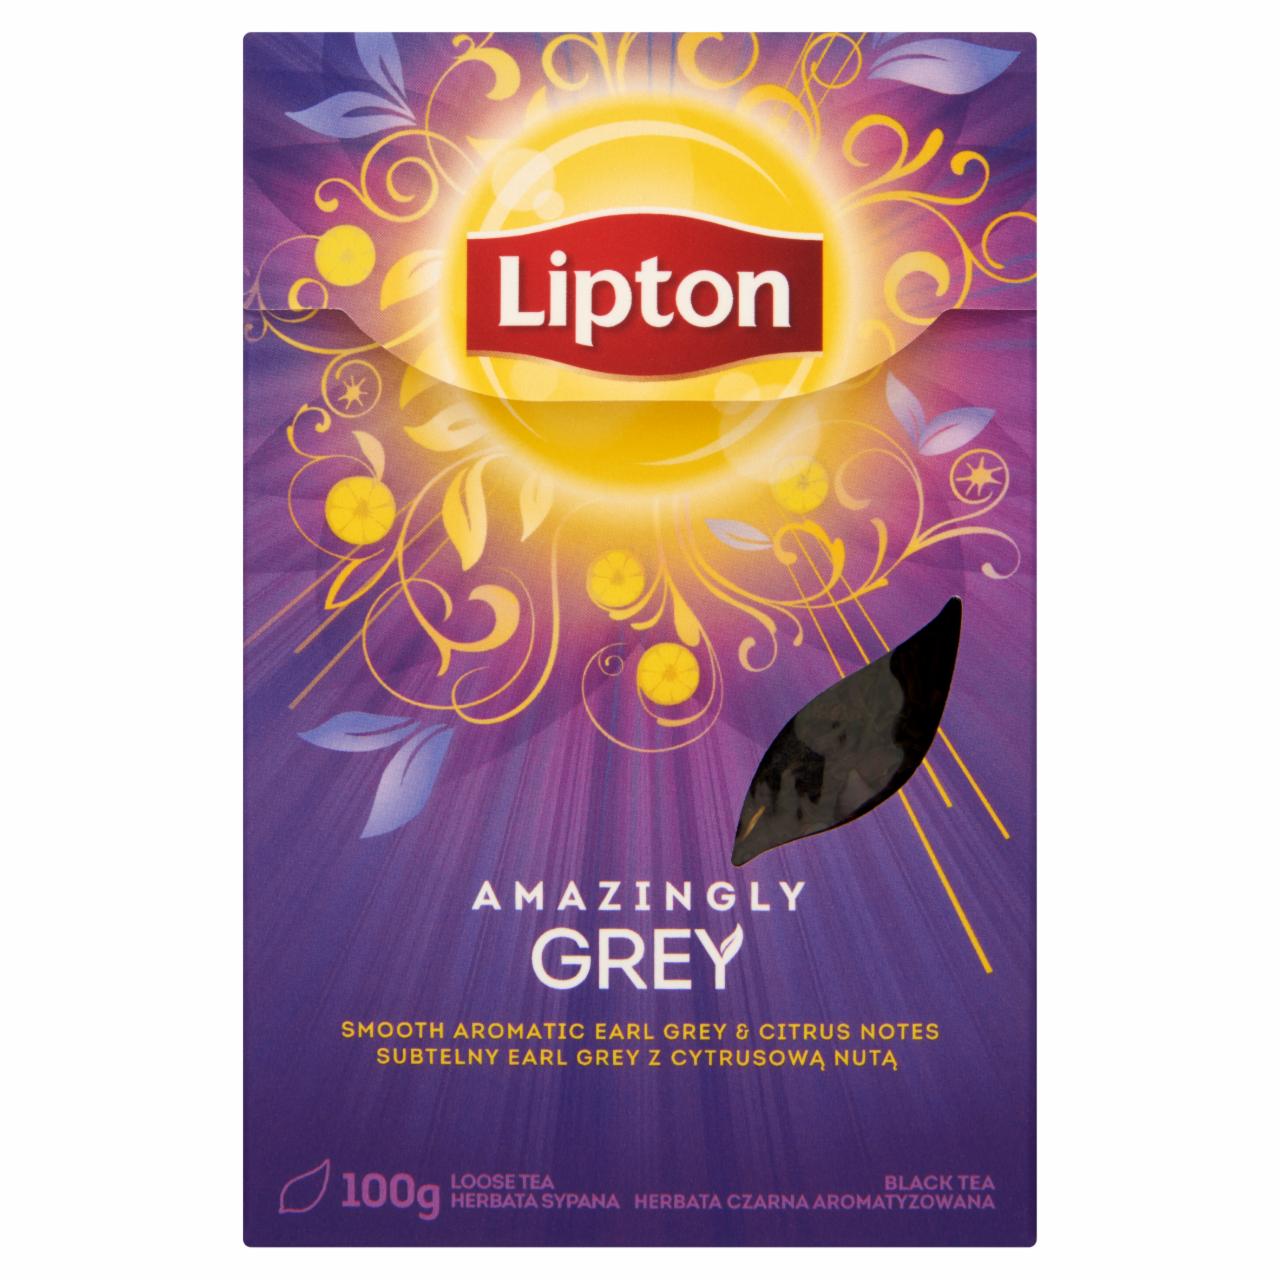 Képek - Lipton Amazingly Grey bergamott és körömvirág ízesítésű szálas fekete tea 100 g